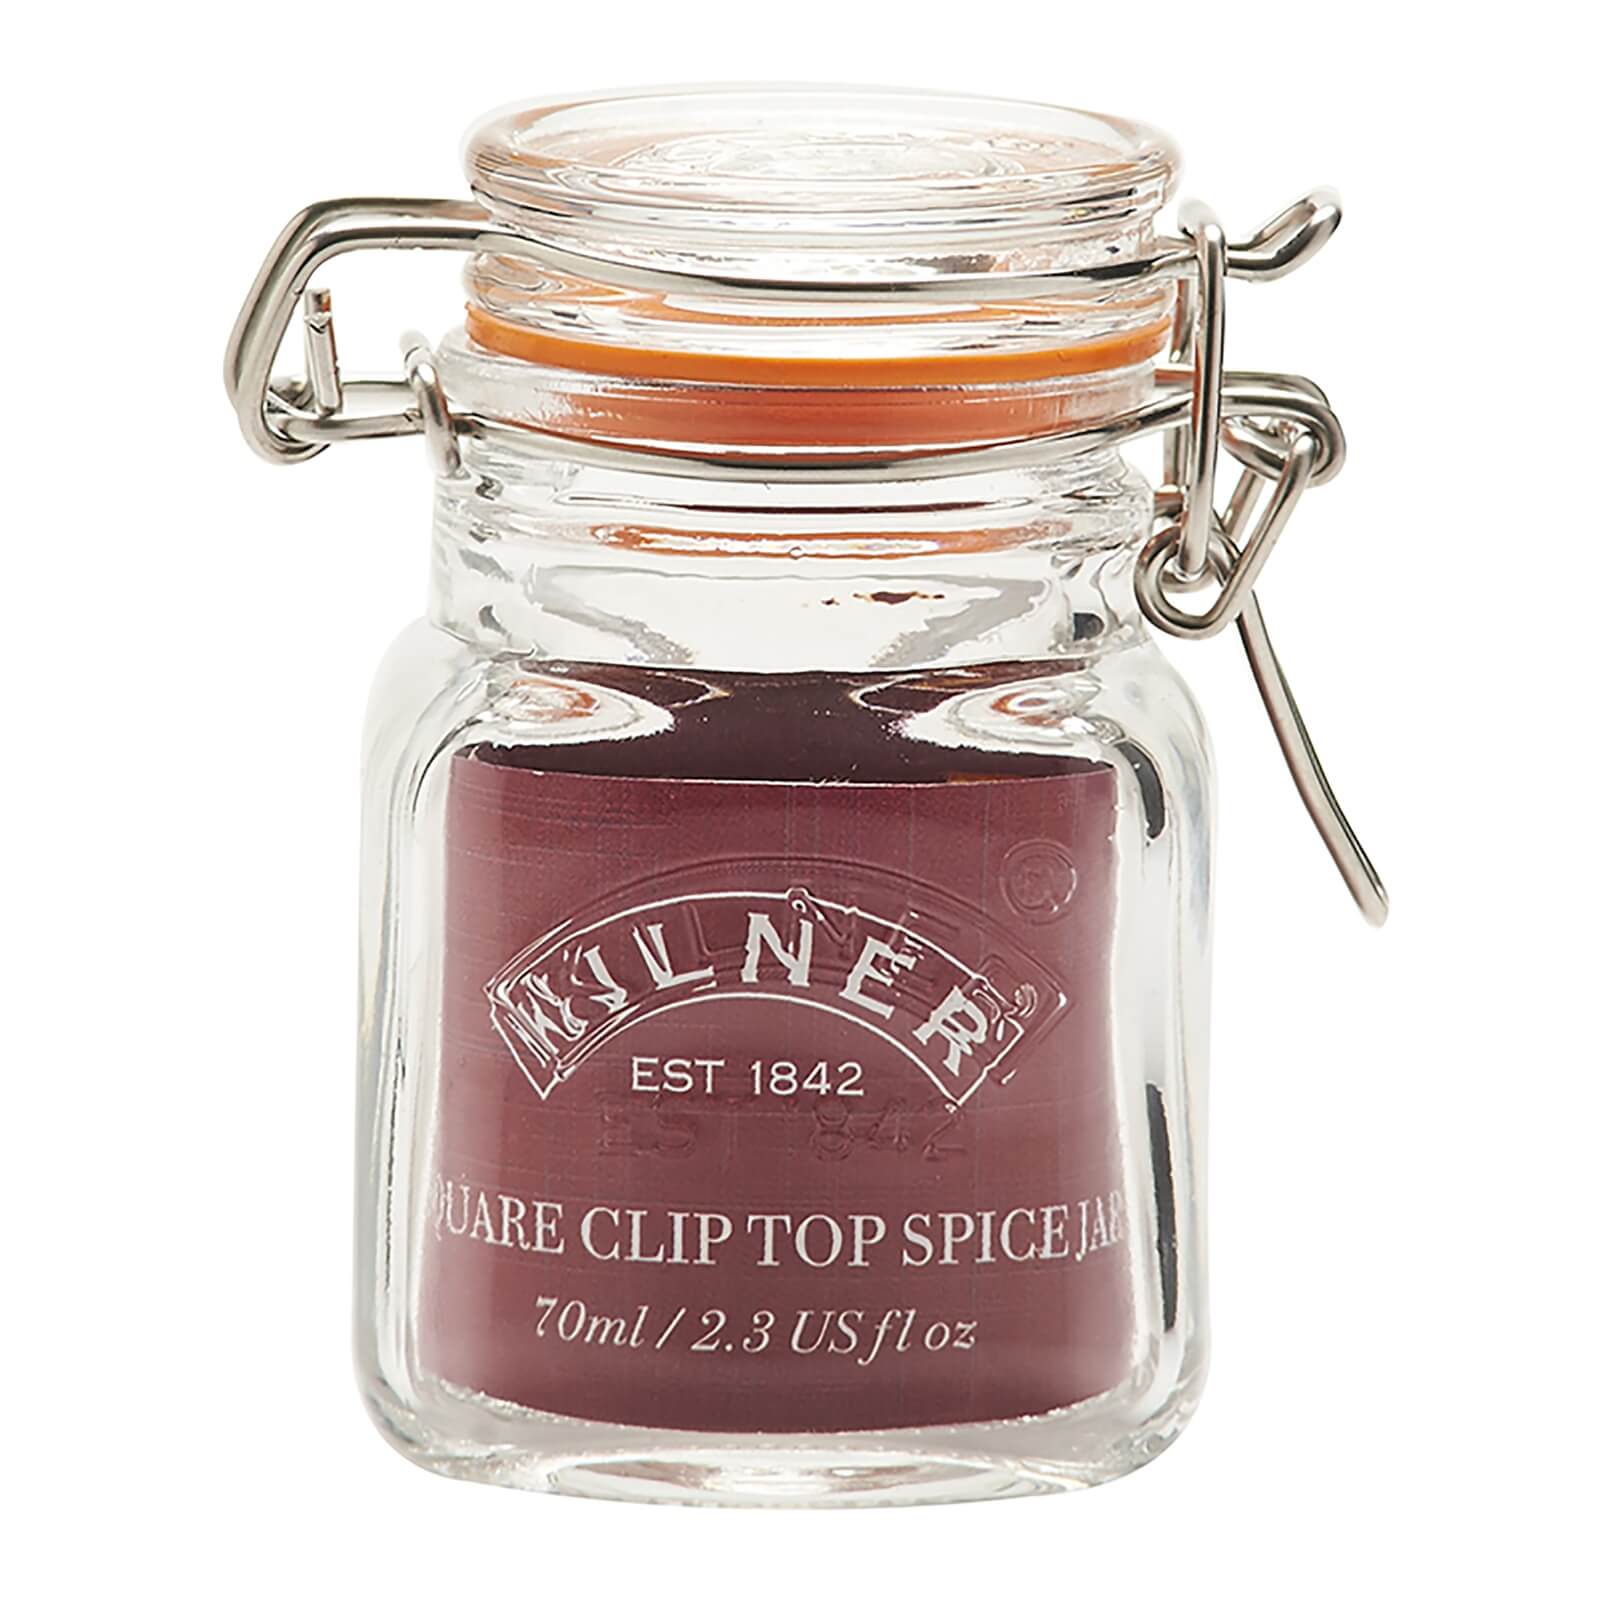 Kilner Clip Top Square Spice Jar - 70ml